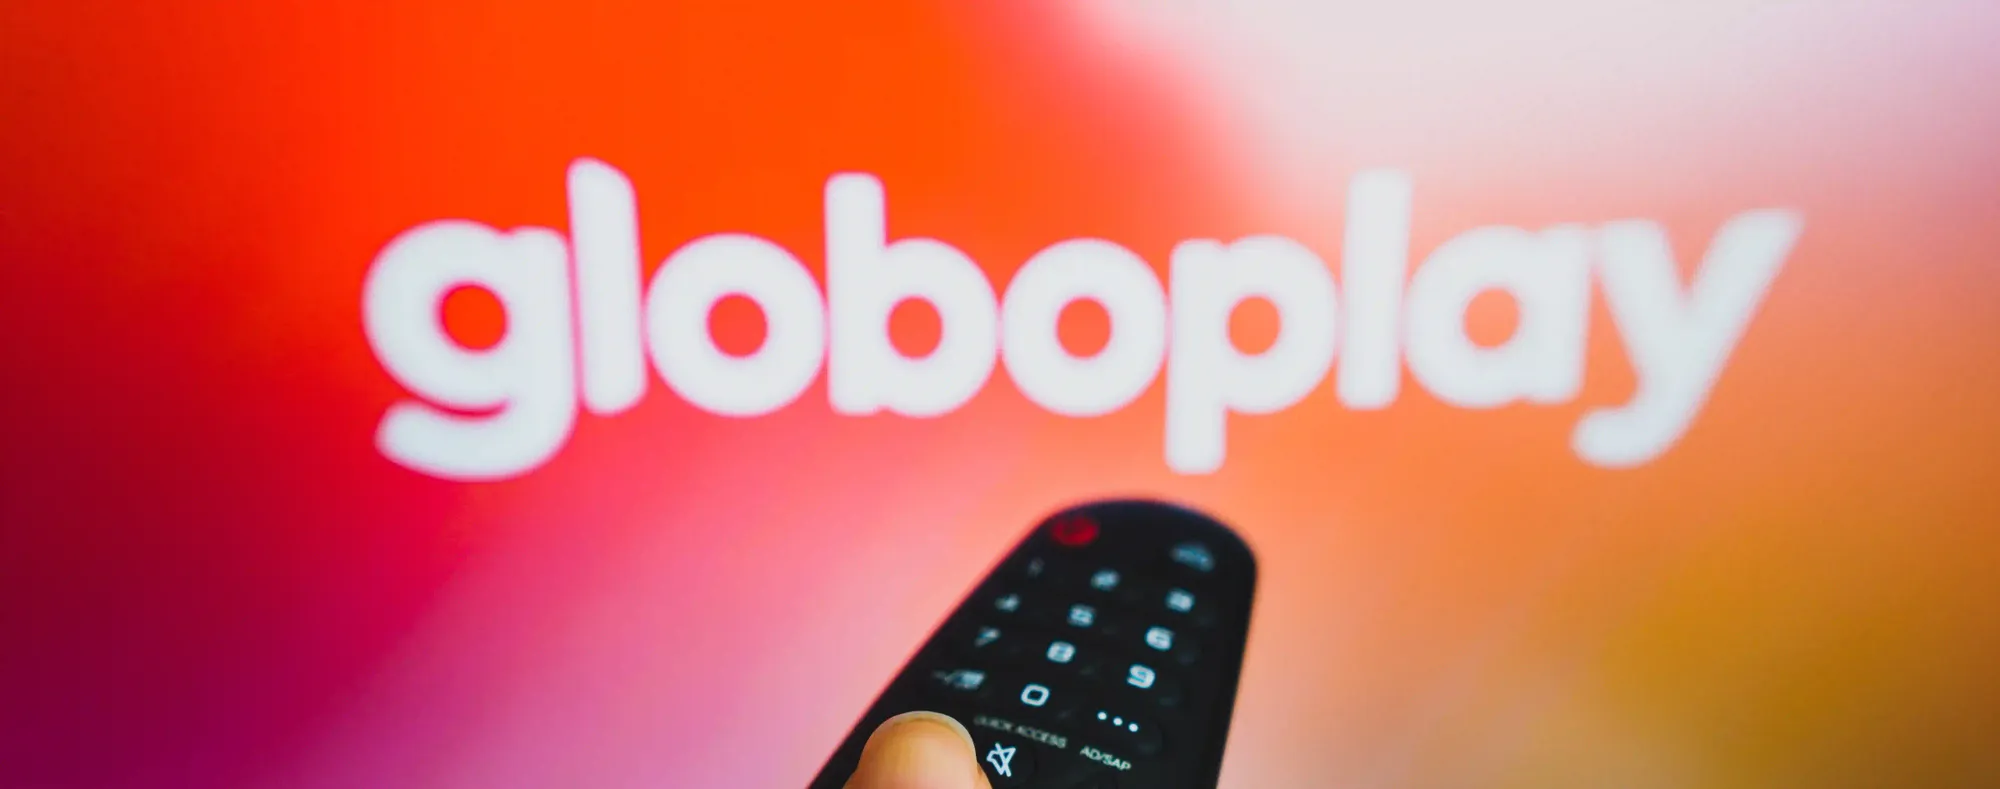 Como assistir Globoplay na TV? Aprenda o passo a passo